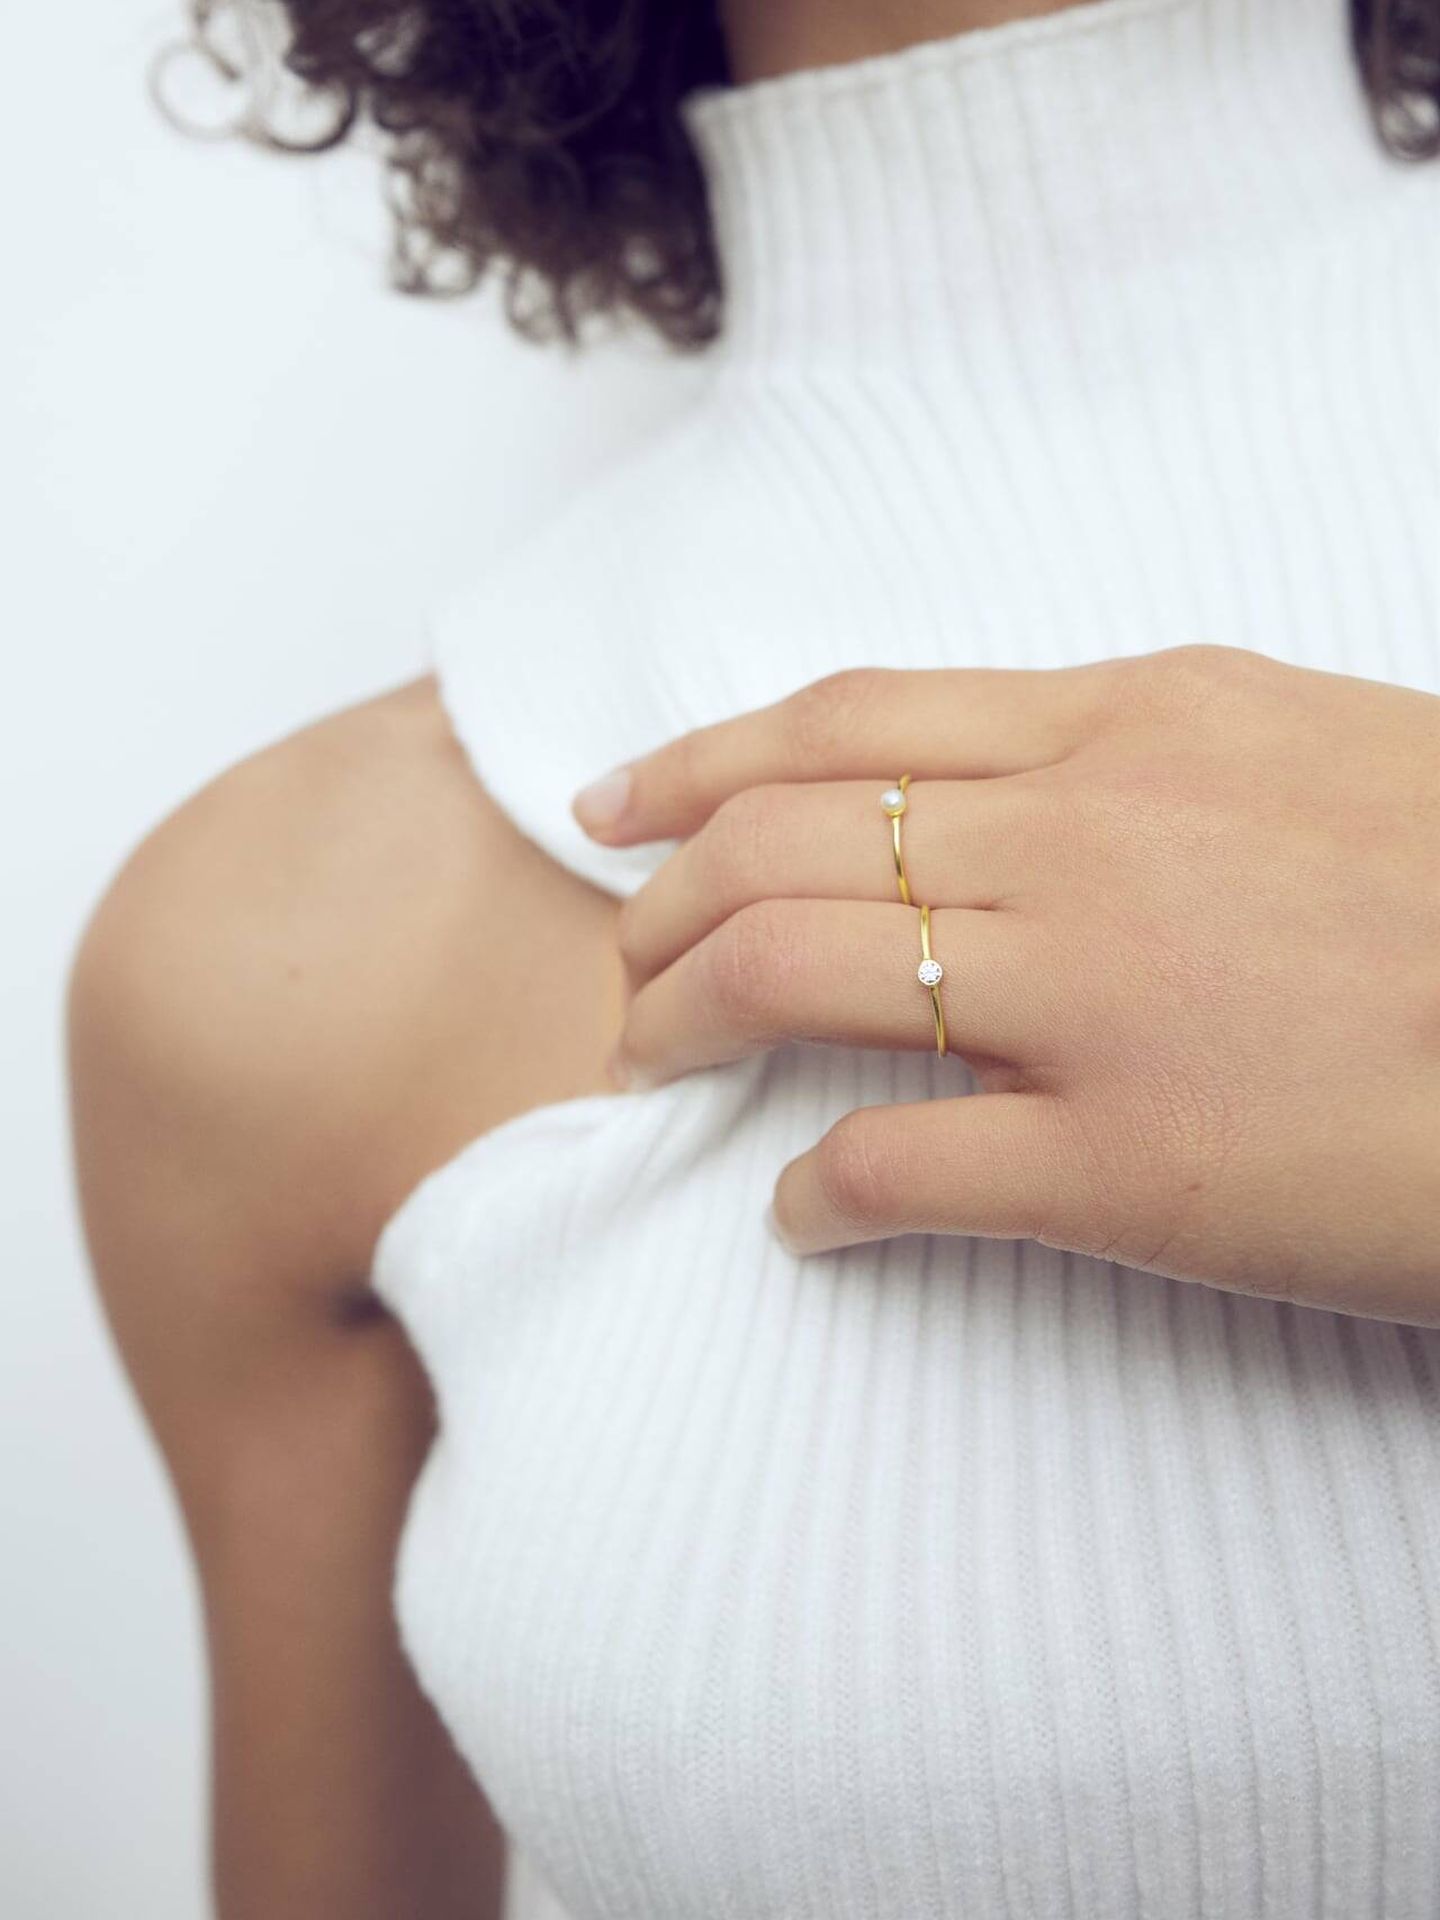 Colección de joyas minimal. (Zara/Cortesía)